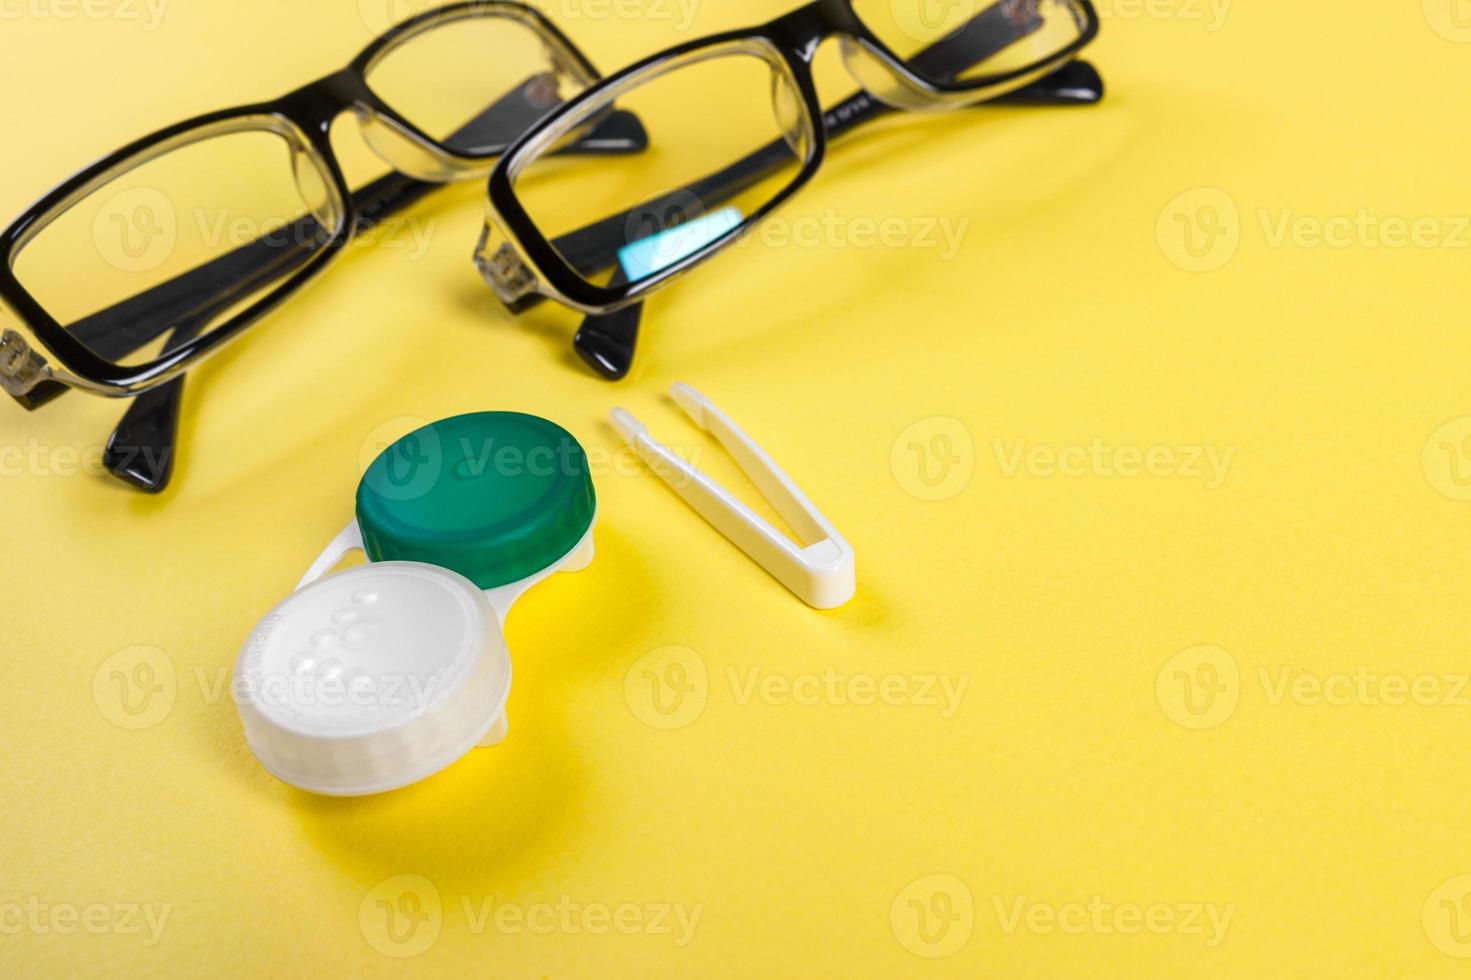 lentes de contato com estojo de plástico e pinças com óculos no plano de fundo em um fundo lilás. como guardar e usar lentes de contato foto